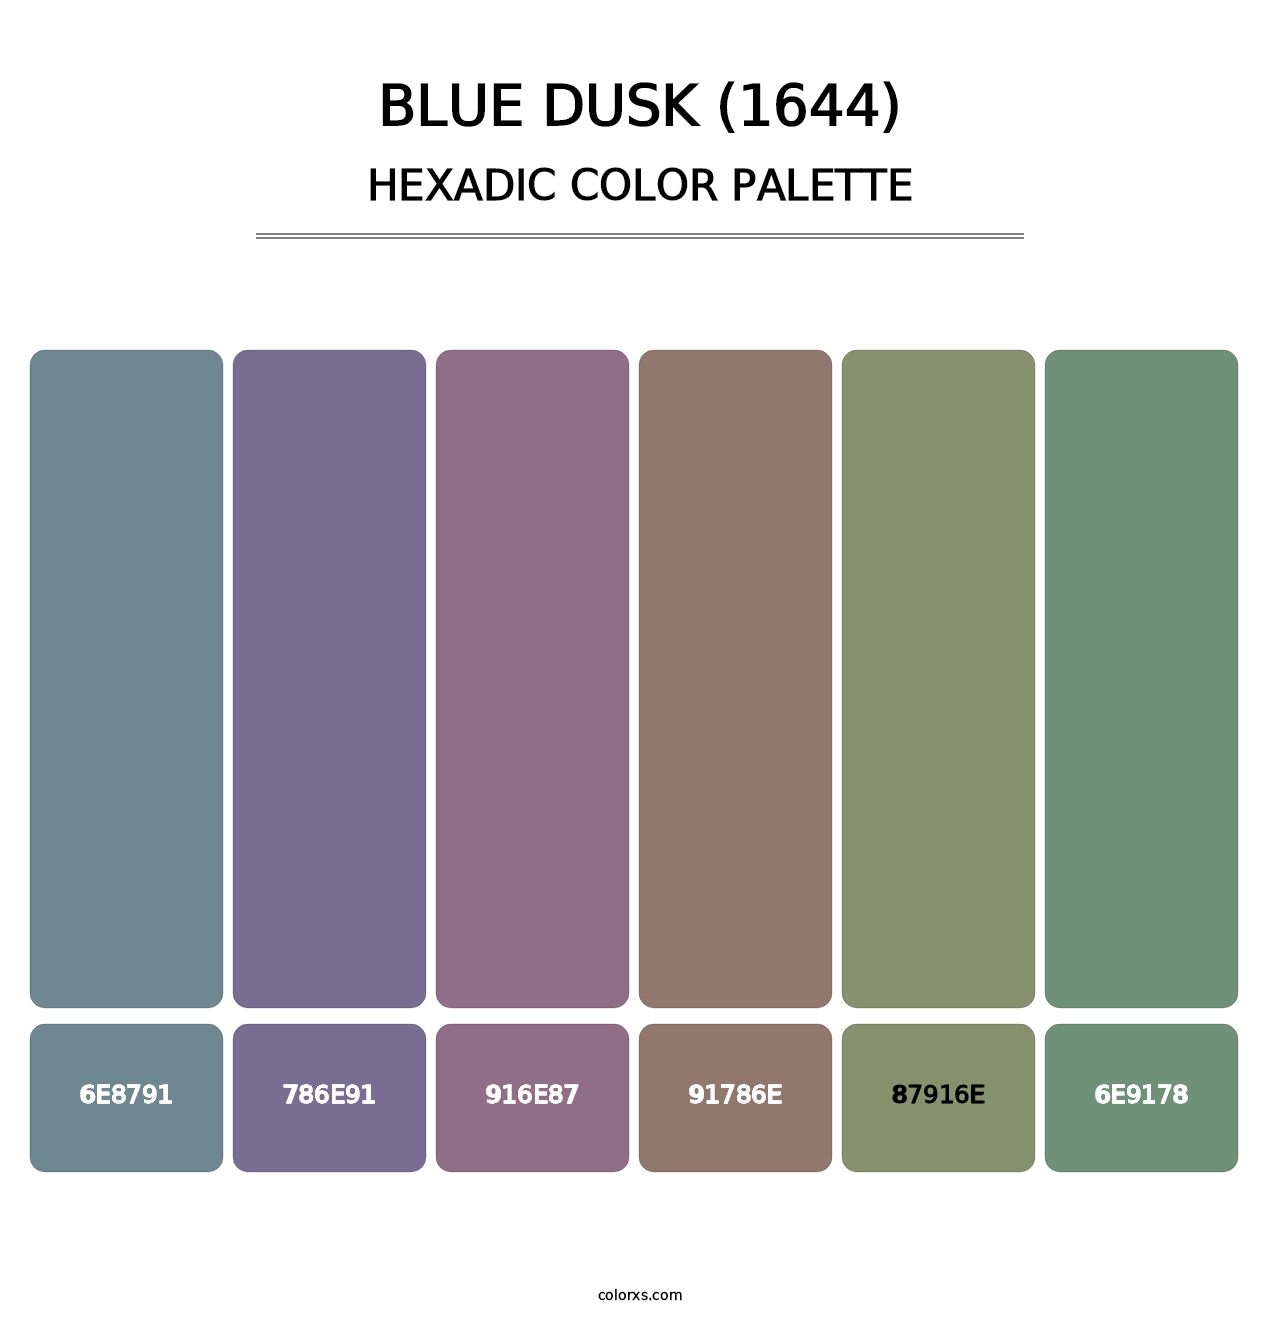 Blue Dusk (1644) - Hexadic Color Palette